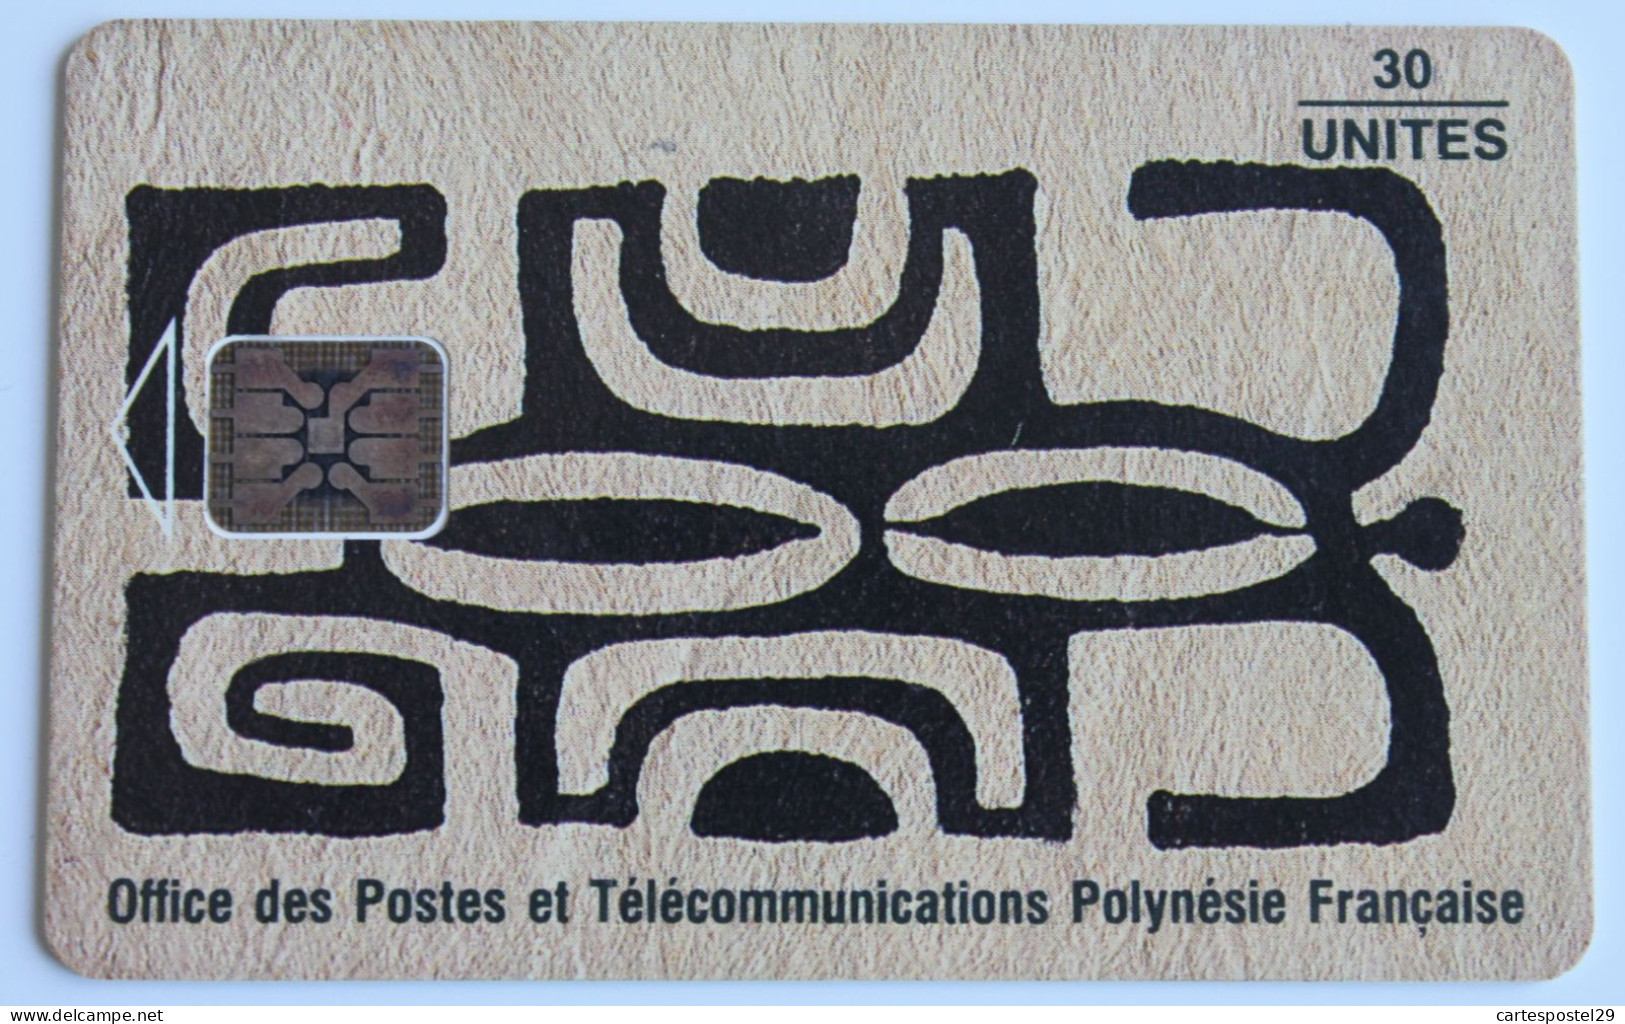 TELECARTE POLYNESIE FRANCAISE - French Polynesia